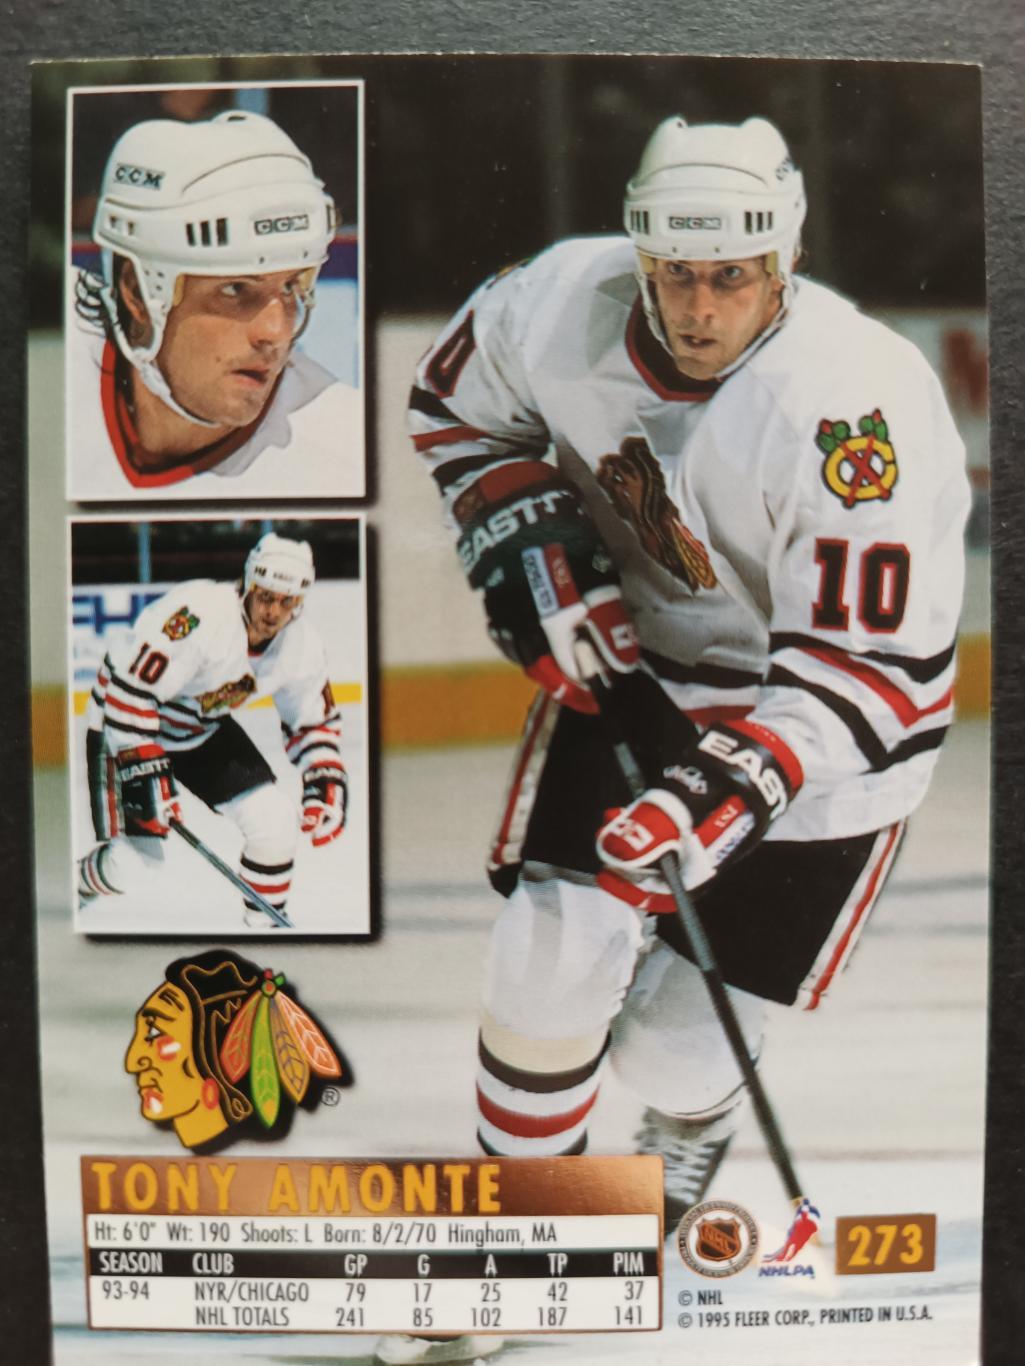 ХОККЕЙ КАРТОЧКА НХЛ FLEER ULTRA 1994-95 NHL TONY AMONTE BLACK HAWKS #273 3